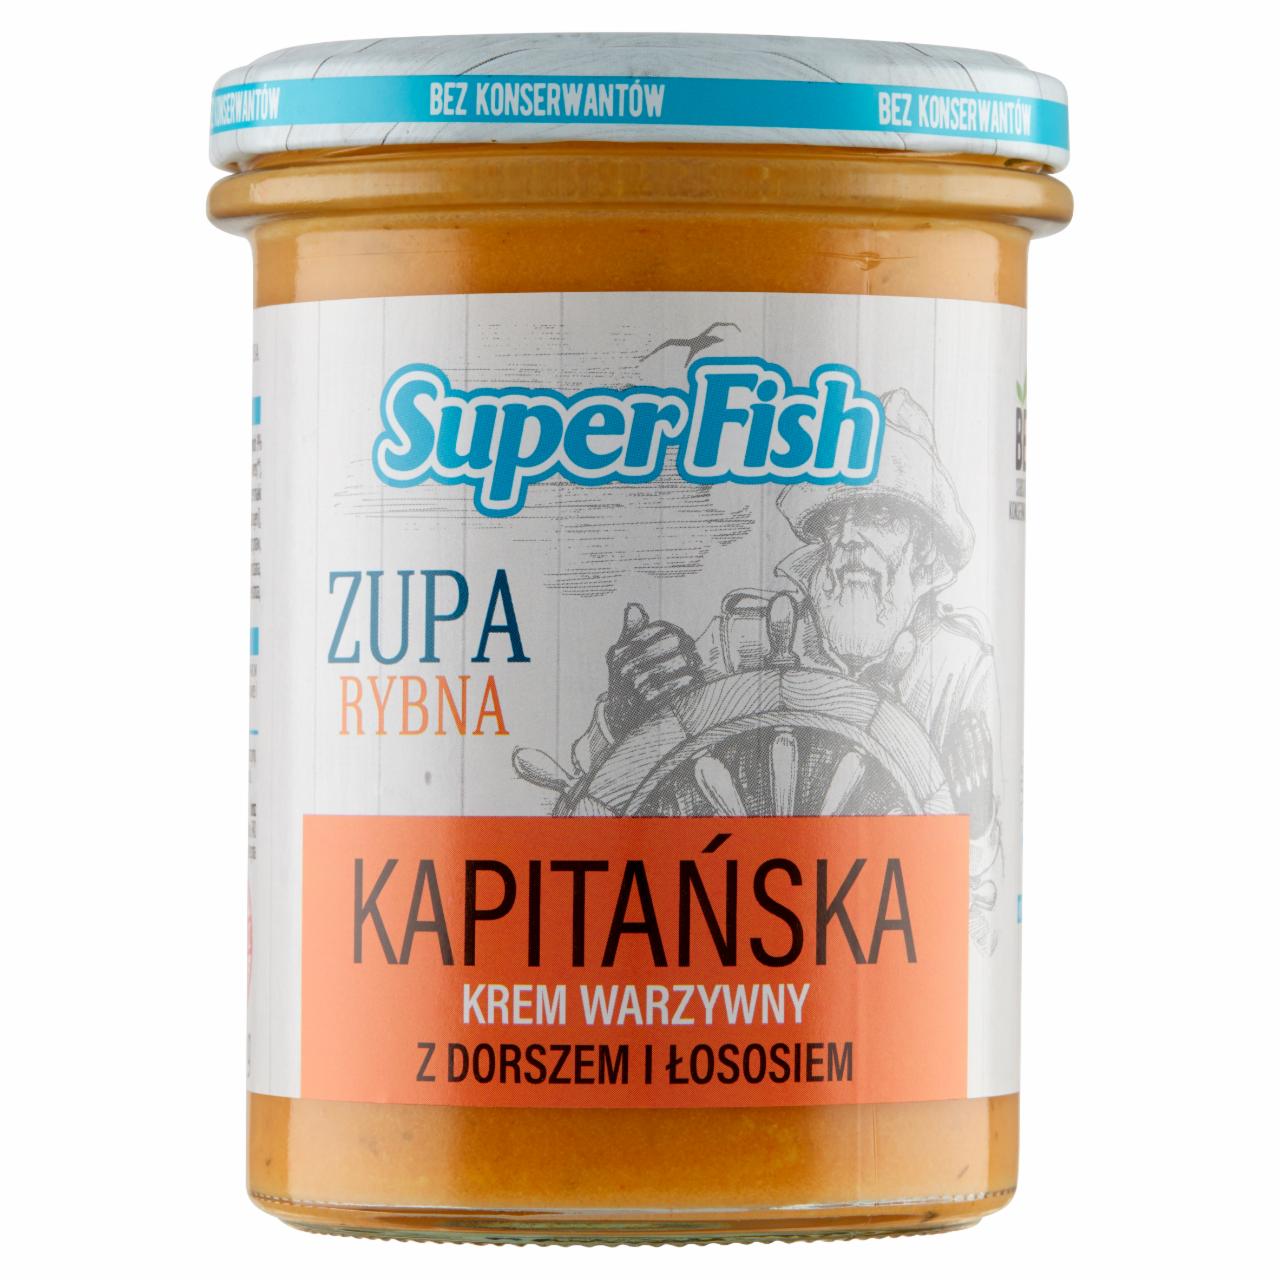 Zdjęcia - SuperFish Zupa rybna kapitańska krem warzywny z dorszem i łososiem 380 g